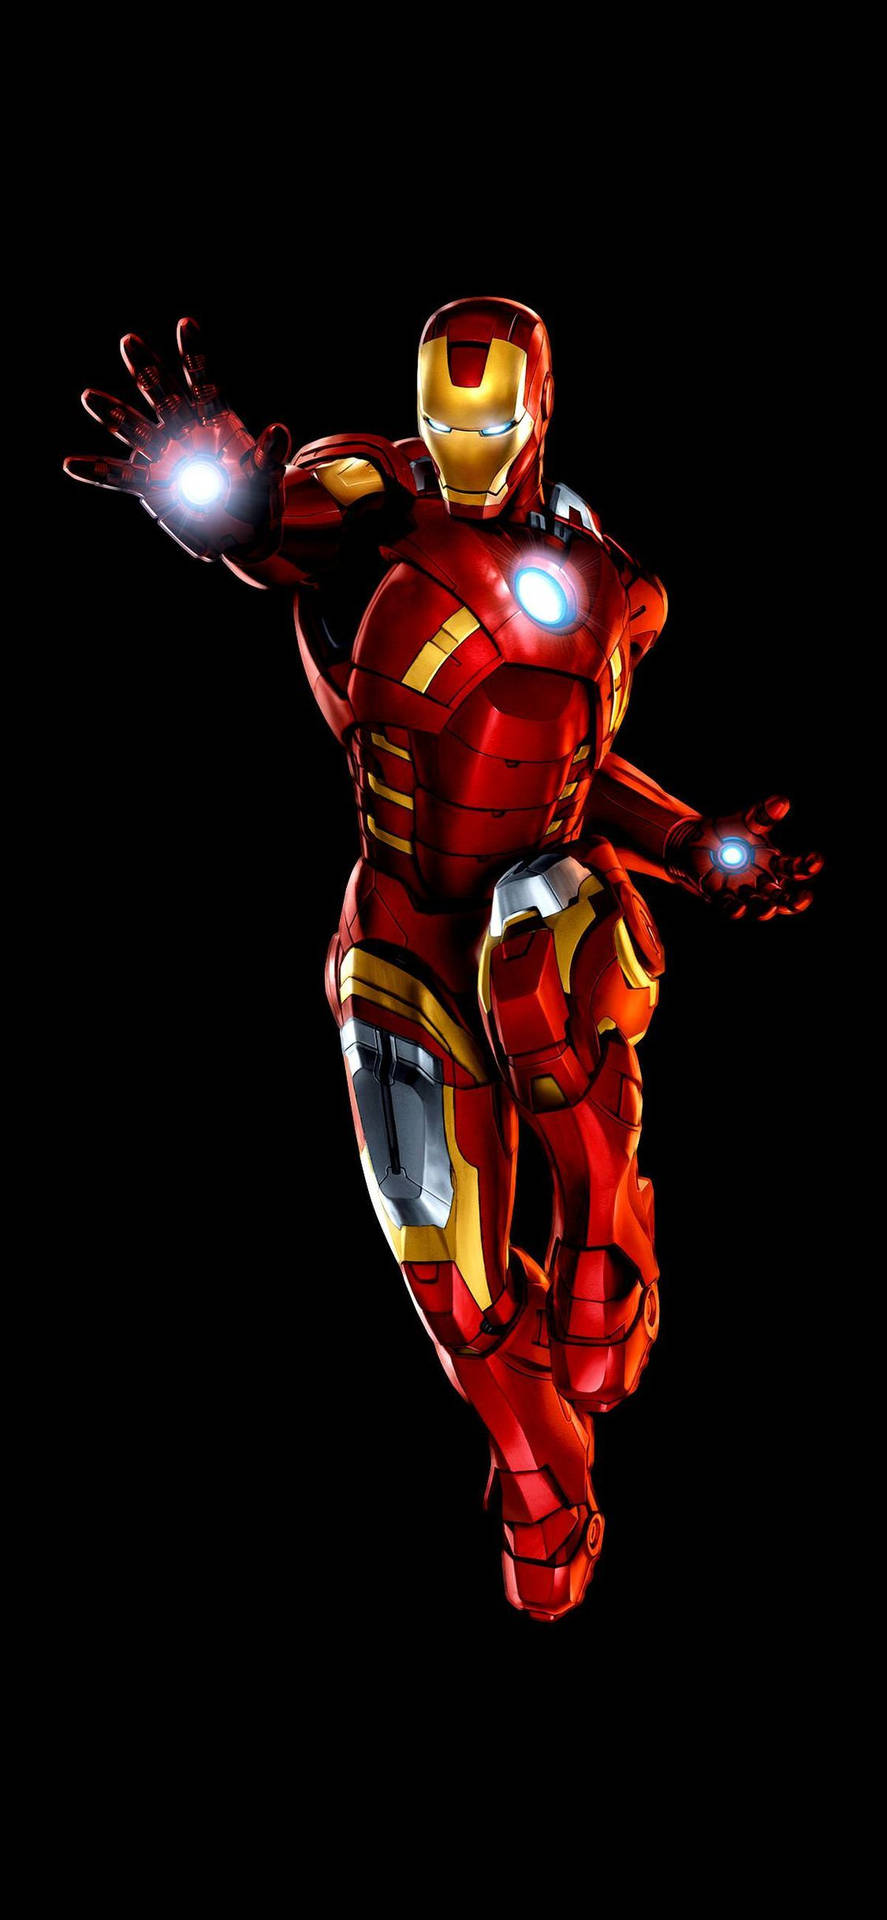 Wallpaperhelskroppsbild Av Iron Man Som Mobilbakgrund: Wallpaper